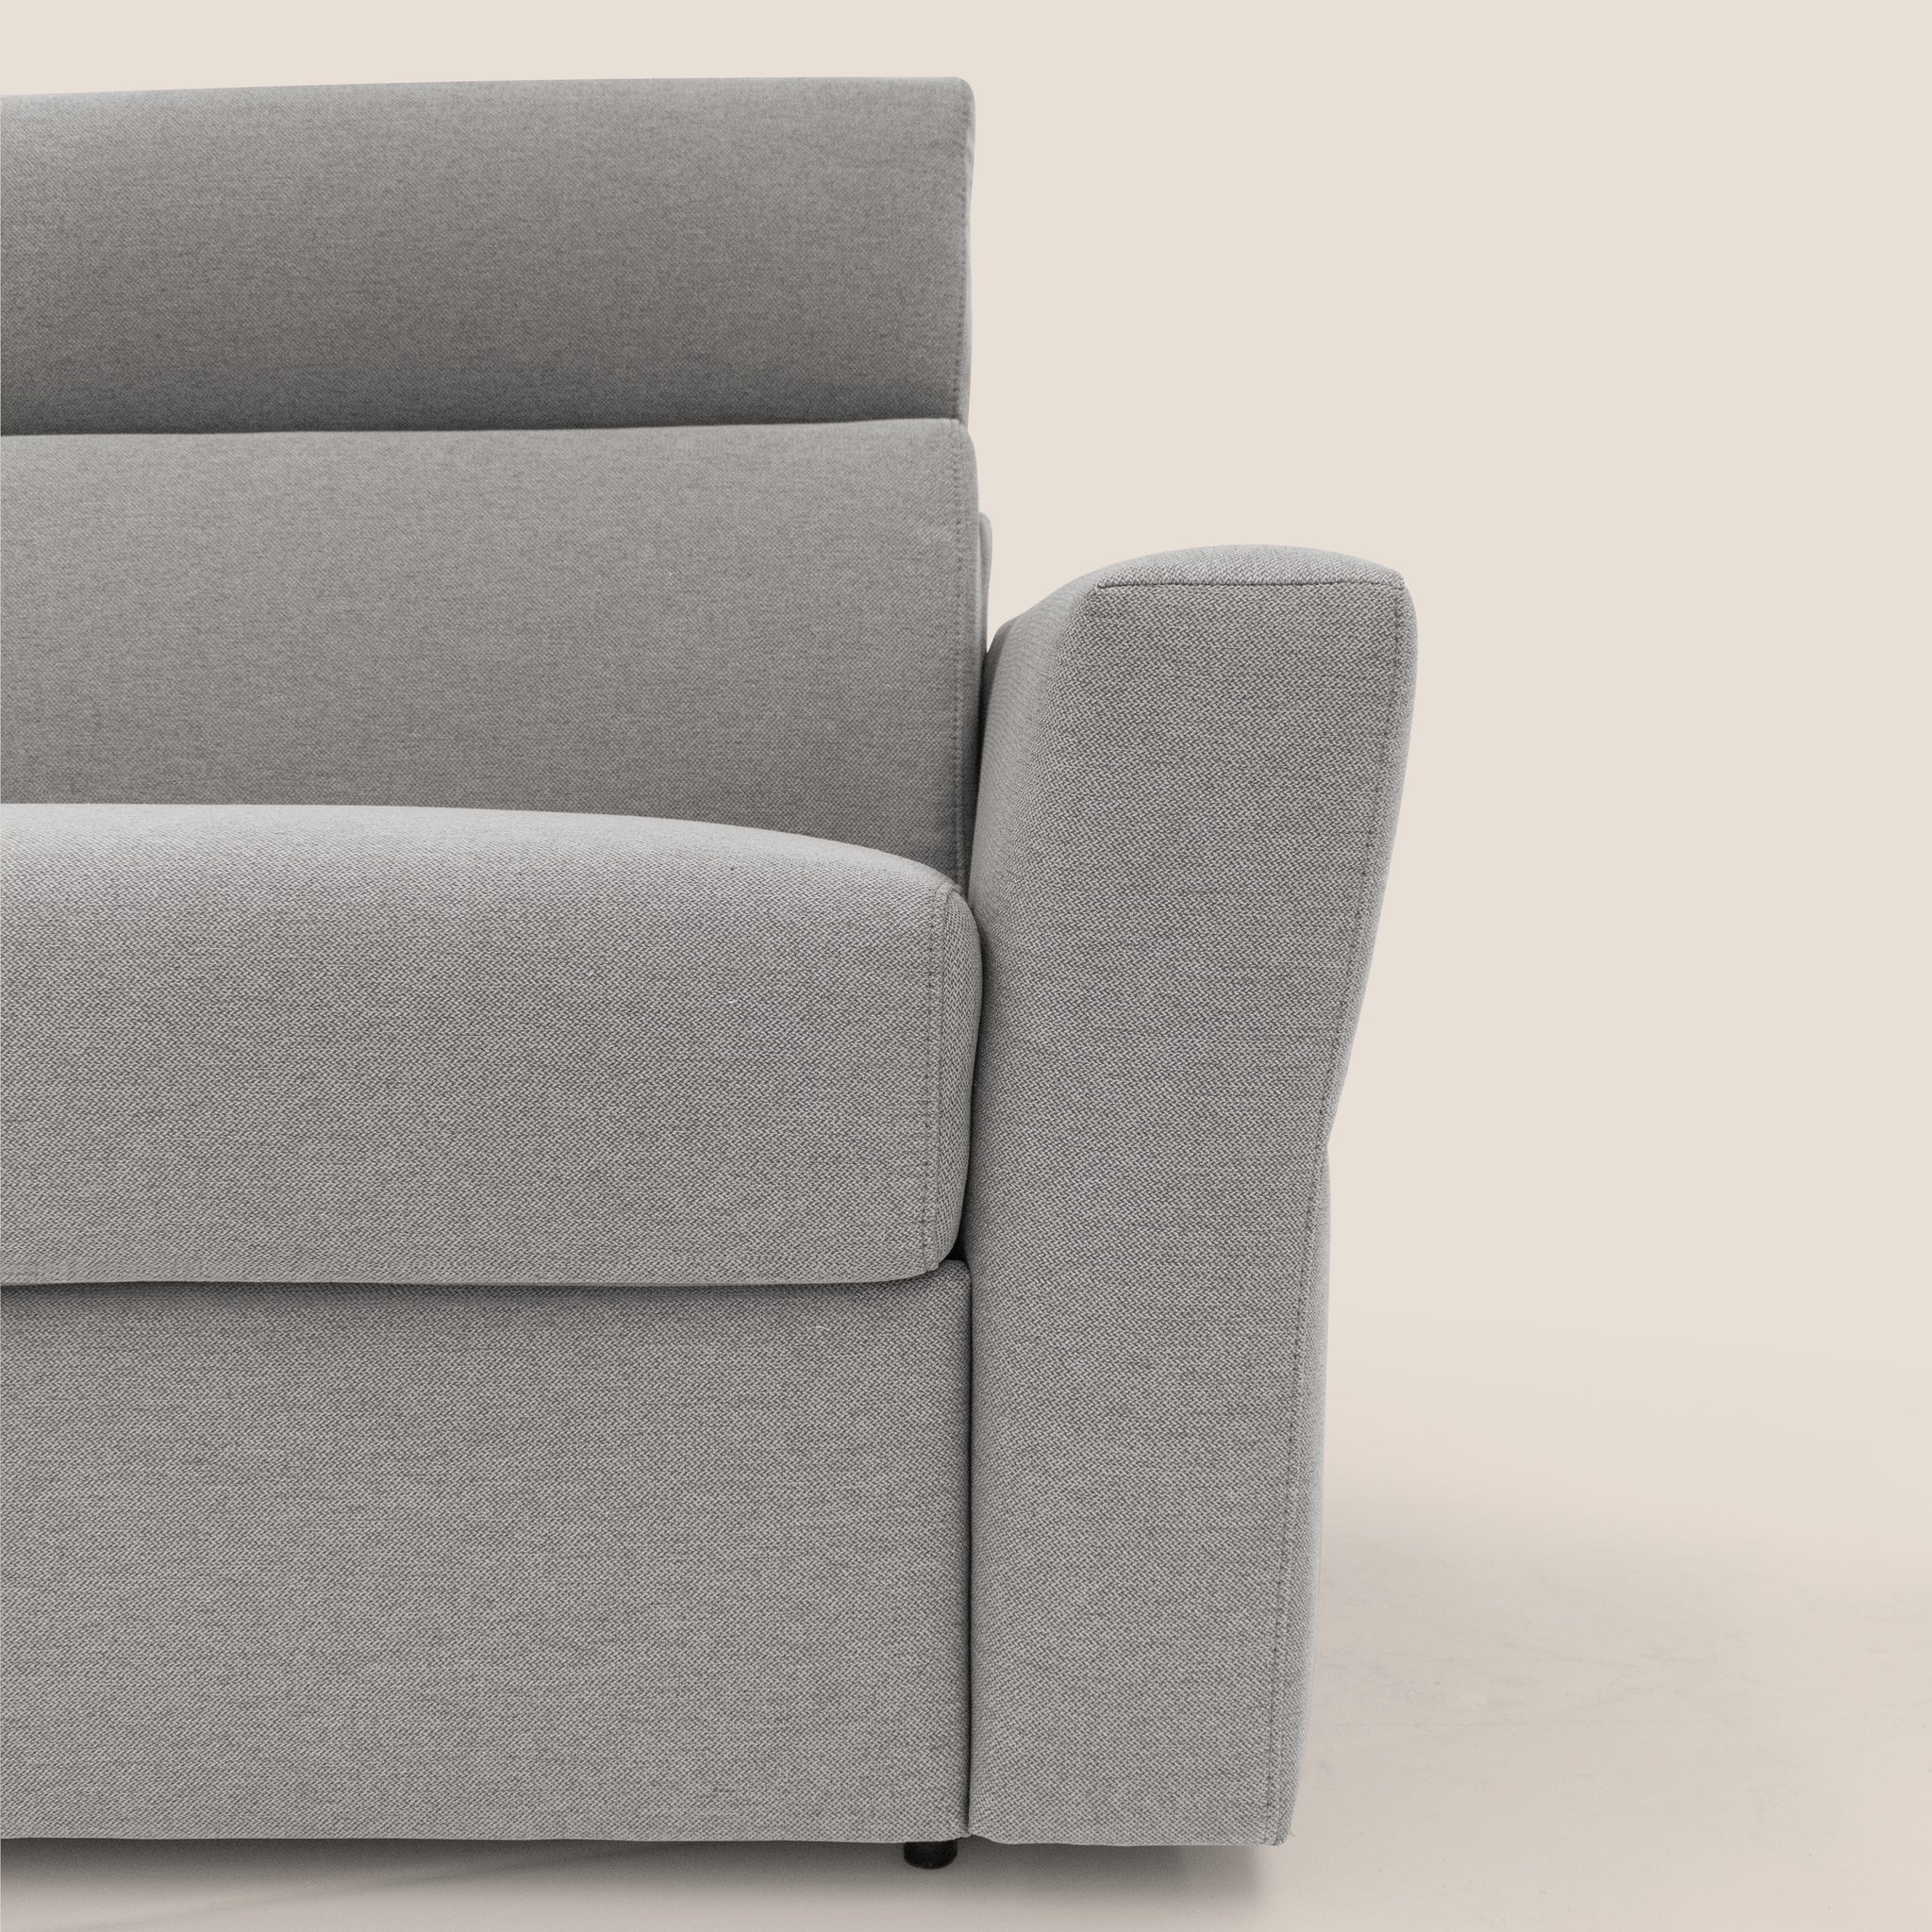 Avalon divano letto 100% ecosostenibile con materasso alto 18 cm in tessuto smacchiabile T05